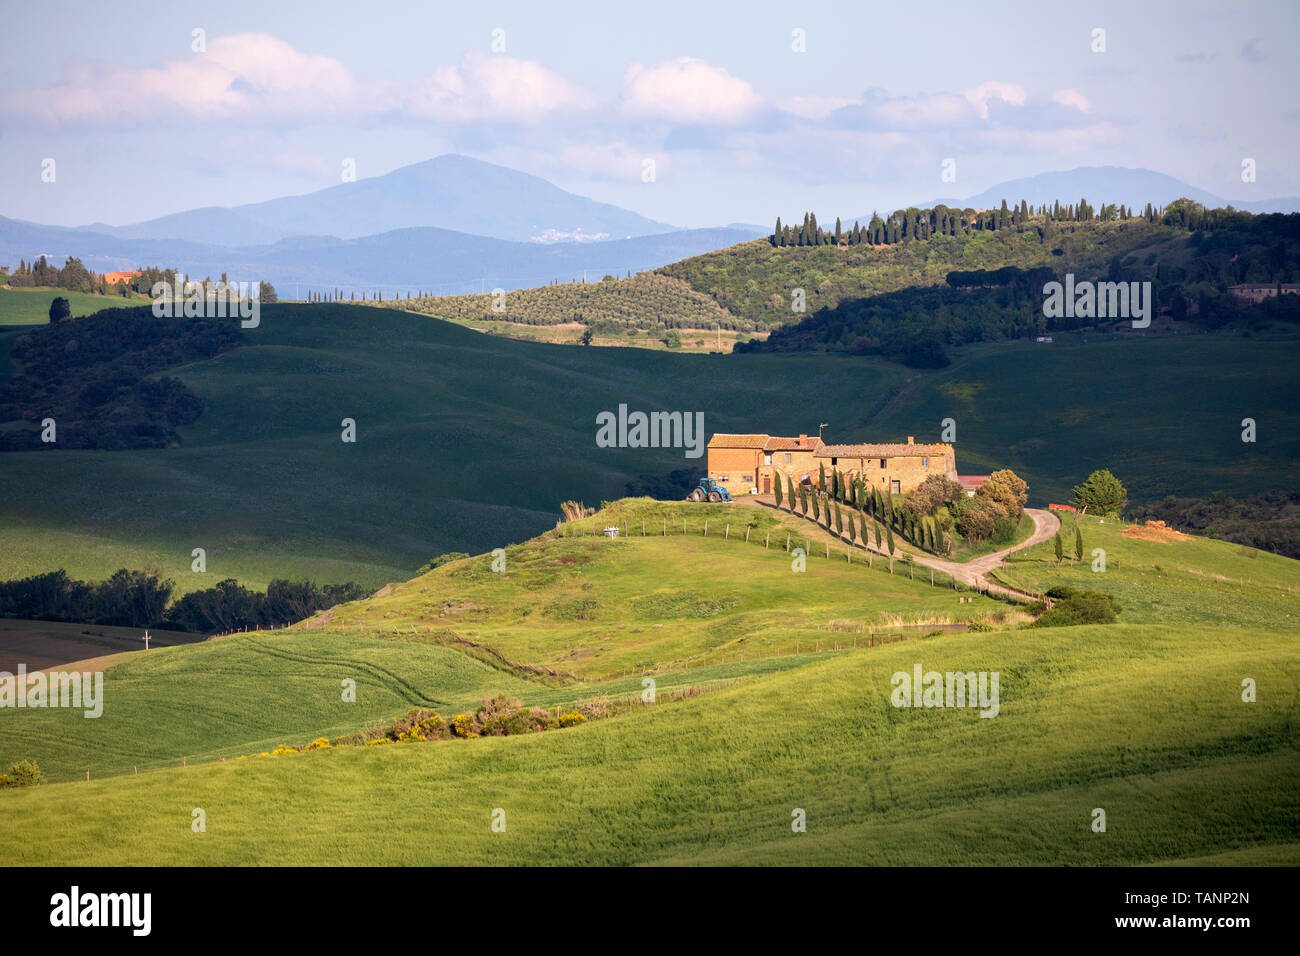 Toskanisches Bauernhaus in Toskanische Landschaft, San Quirico d'Orcia Provinz Siena, Toskana, Italien, Europa isoliert Stockfoto